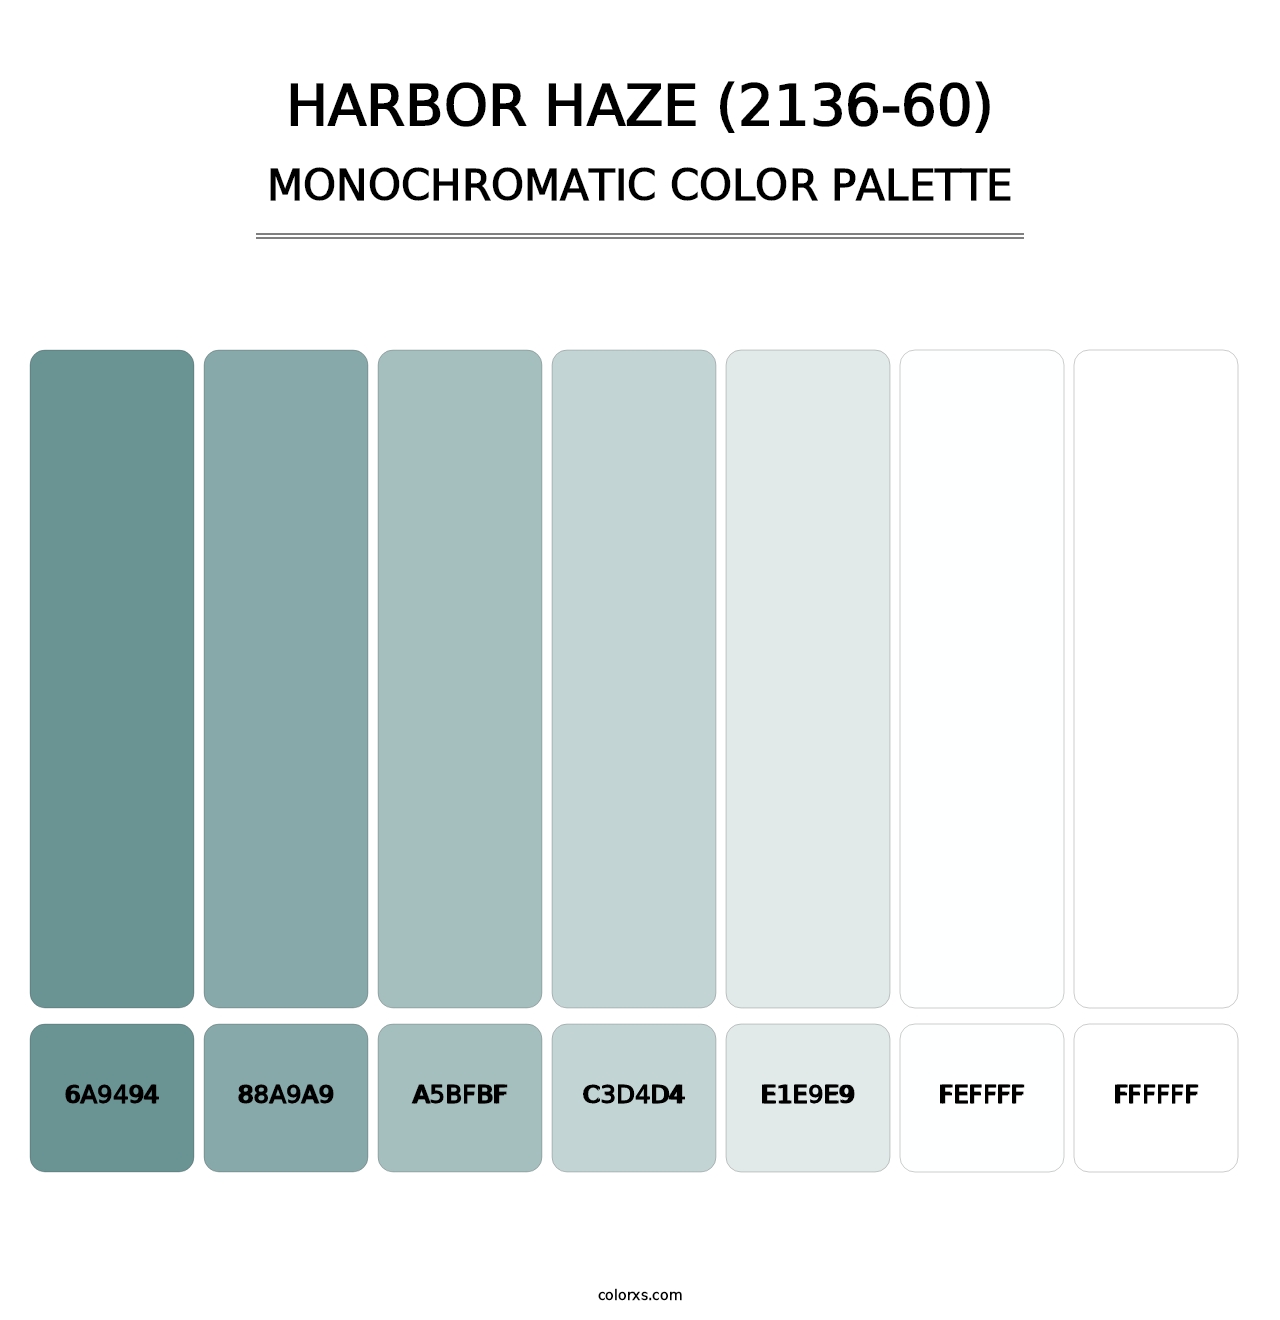 Harbor Haze (2136-60) - Monochromatic Color Palette